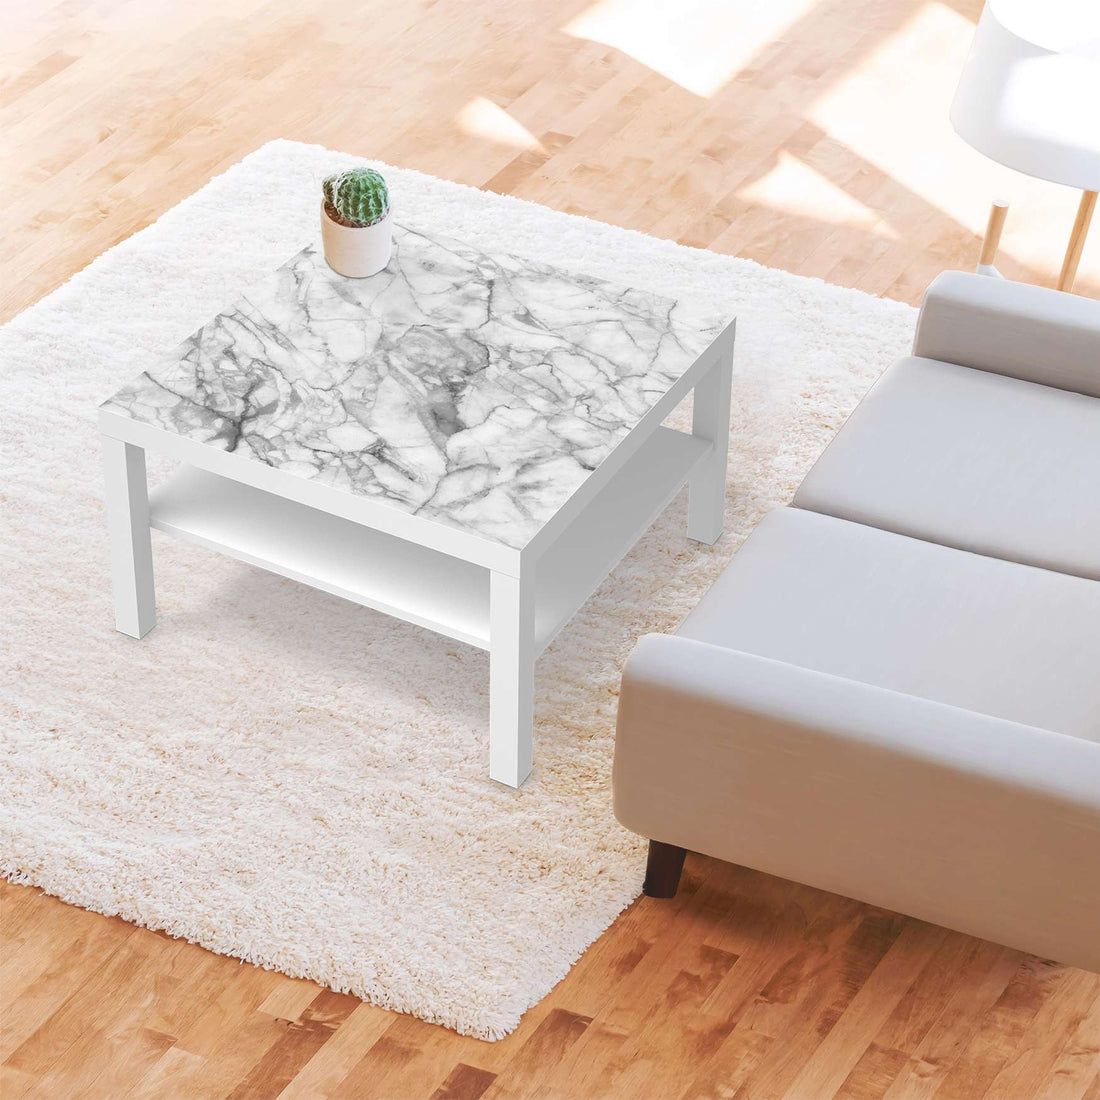 Selbstklebende Folie Marmor weiß - IKEA Lack Tisch 78x78 cm - Wohnzimmer